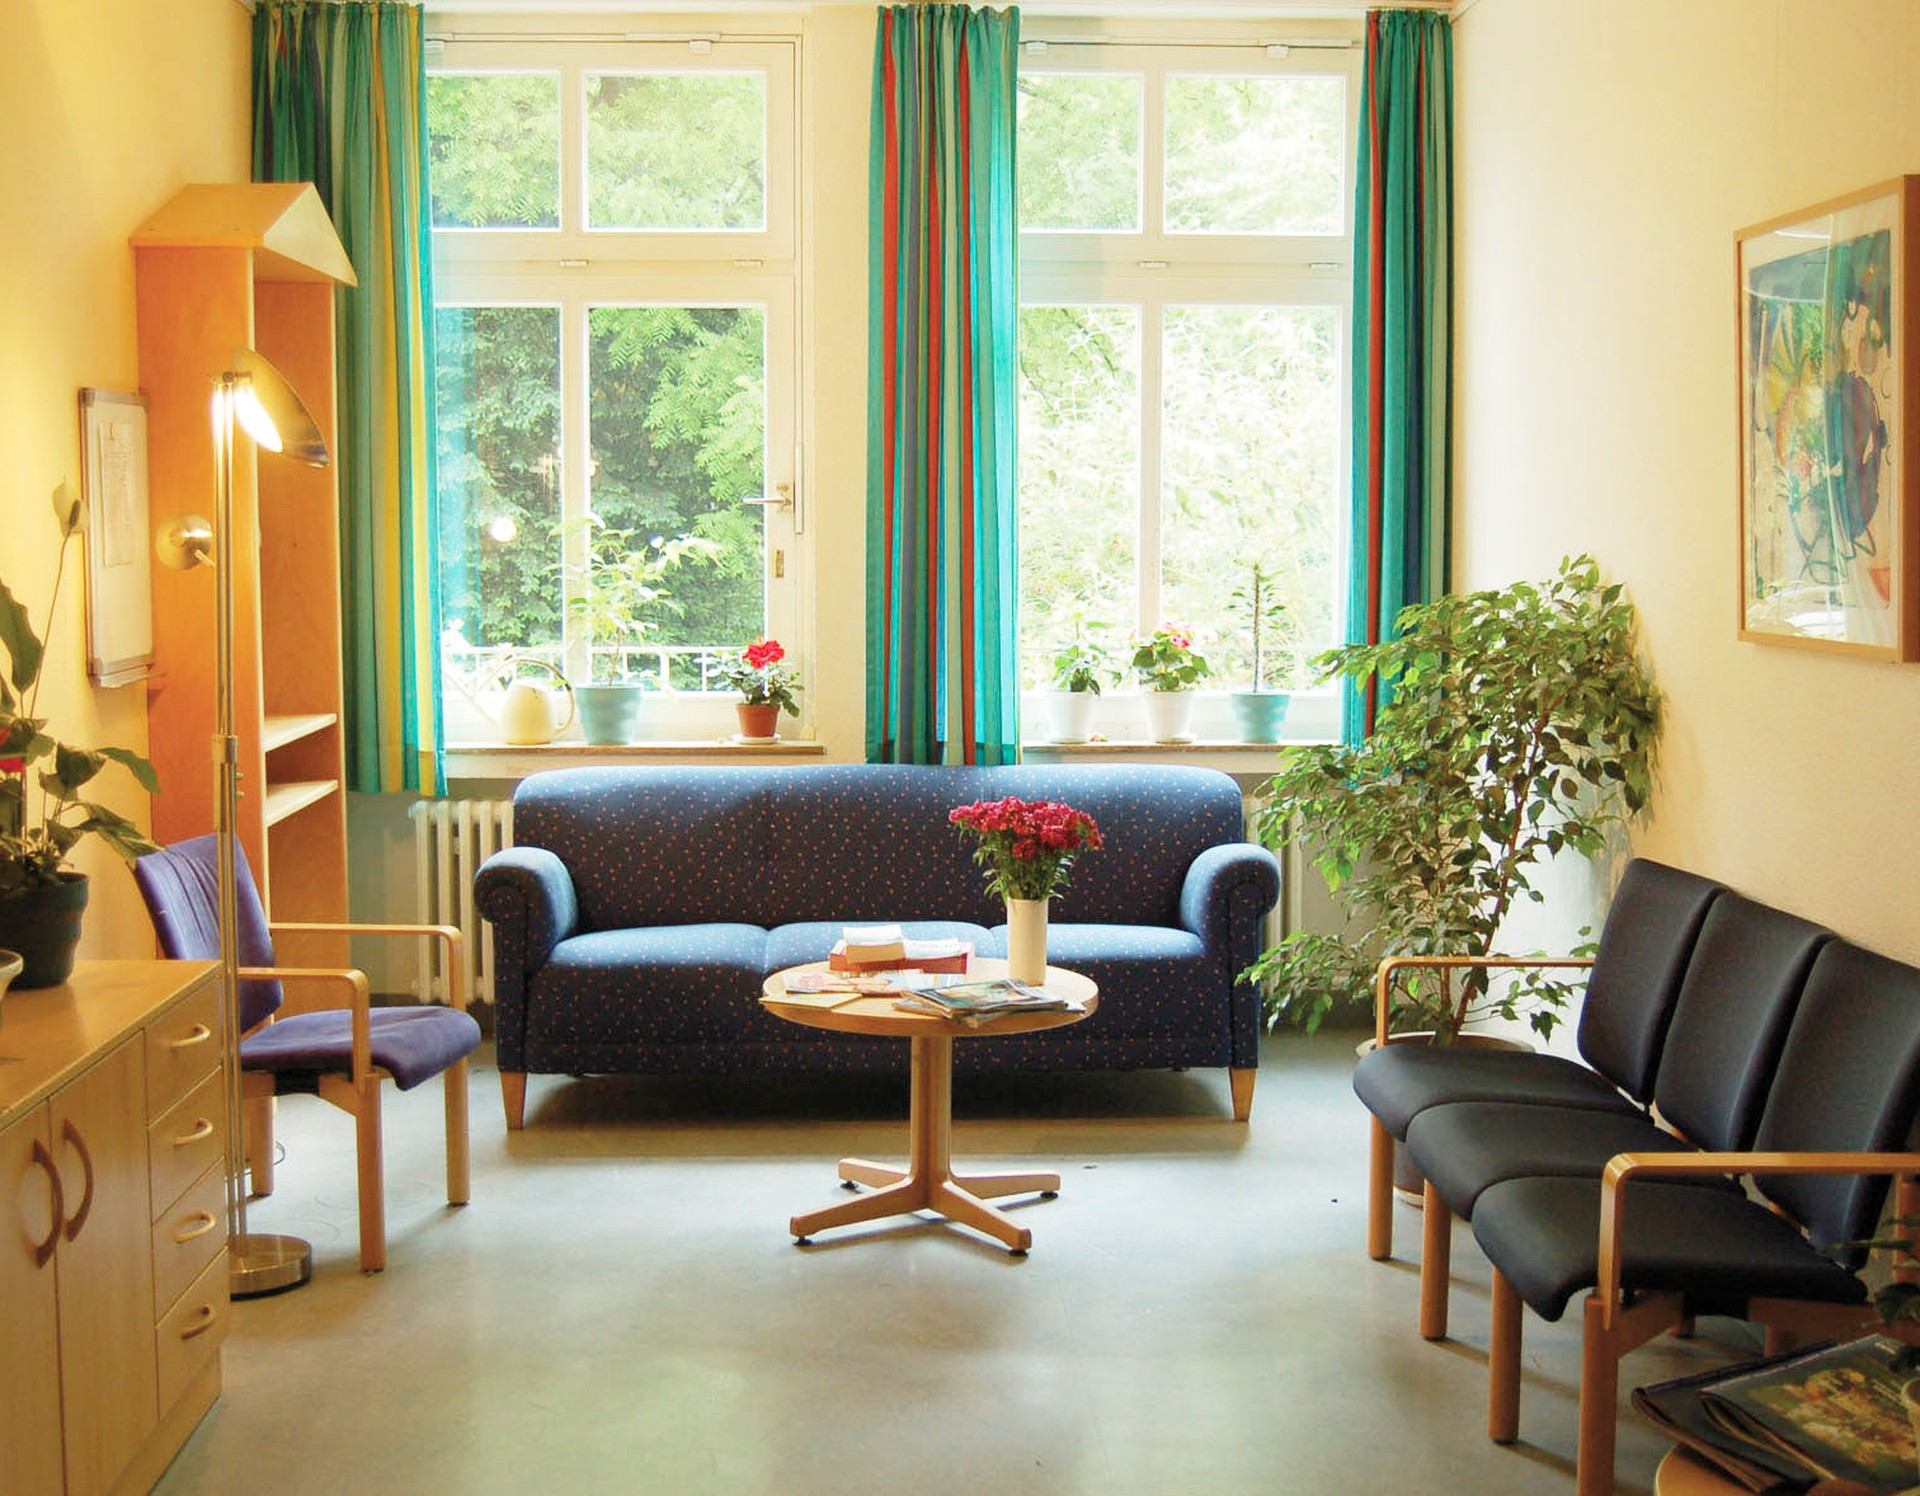 Aufenthaltsraum: Blaue Polstermöbelsitzgruppe vor einem Fenster mit grünen Vorhängen, auf dem Tisch ein Blumenstrauß und verschiedene Bücher